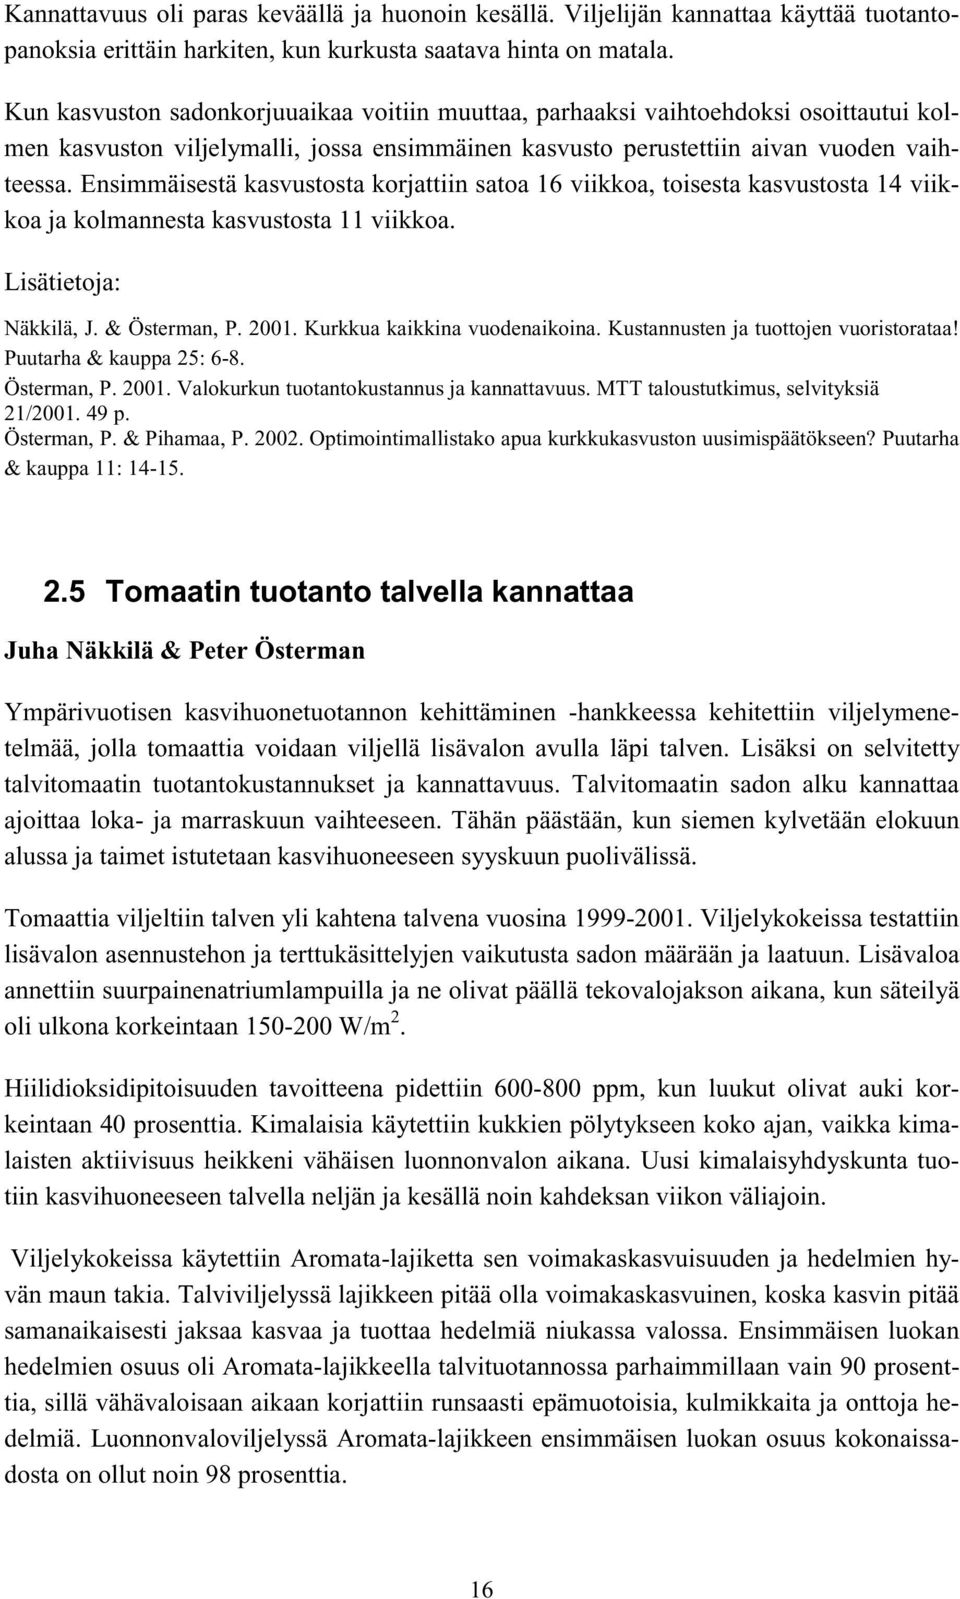 Ensimmäisestä kasvustosta korjattiin satoa 16 viikkoa, toisesta kasvustosta 14 viikkoa ja kolmannesta kasvustosta 11 viikkoa. Lisätietoja: Näkkilä, J. & Österman, P. 2001.